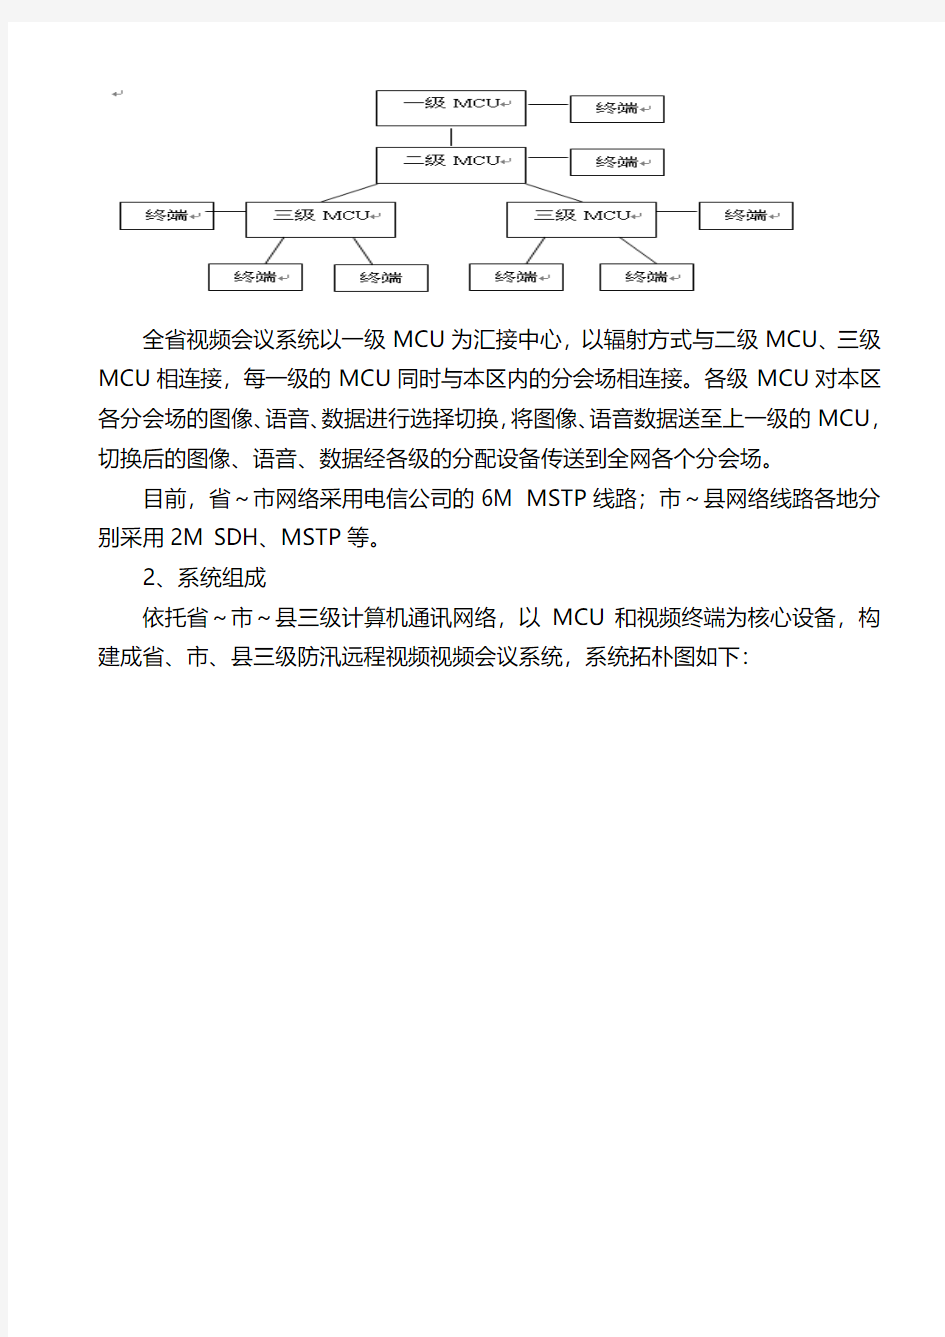 视频会议系统升级改造项目浙江省防指办